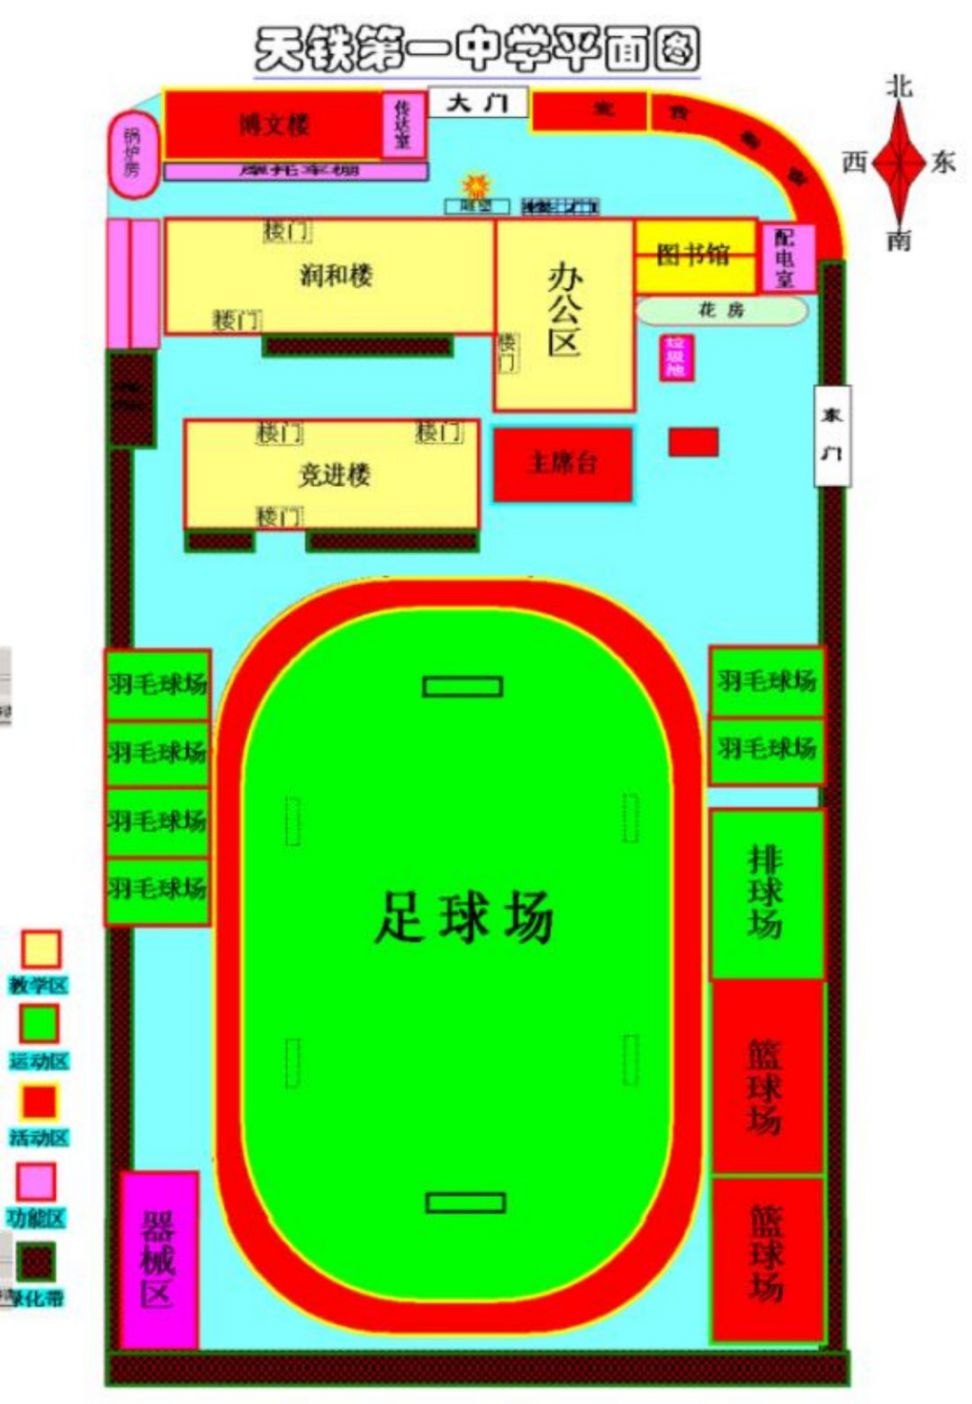 2021天津天铁自学考试考点考场示意图